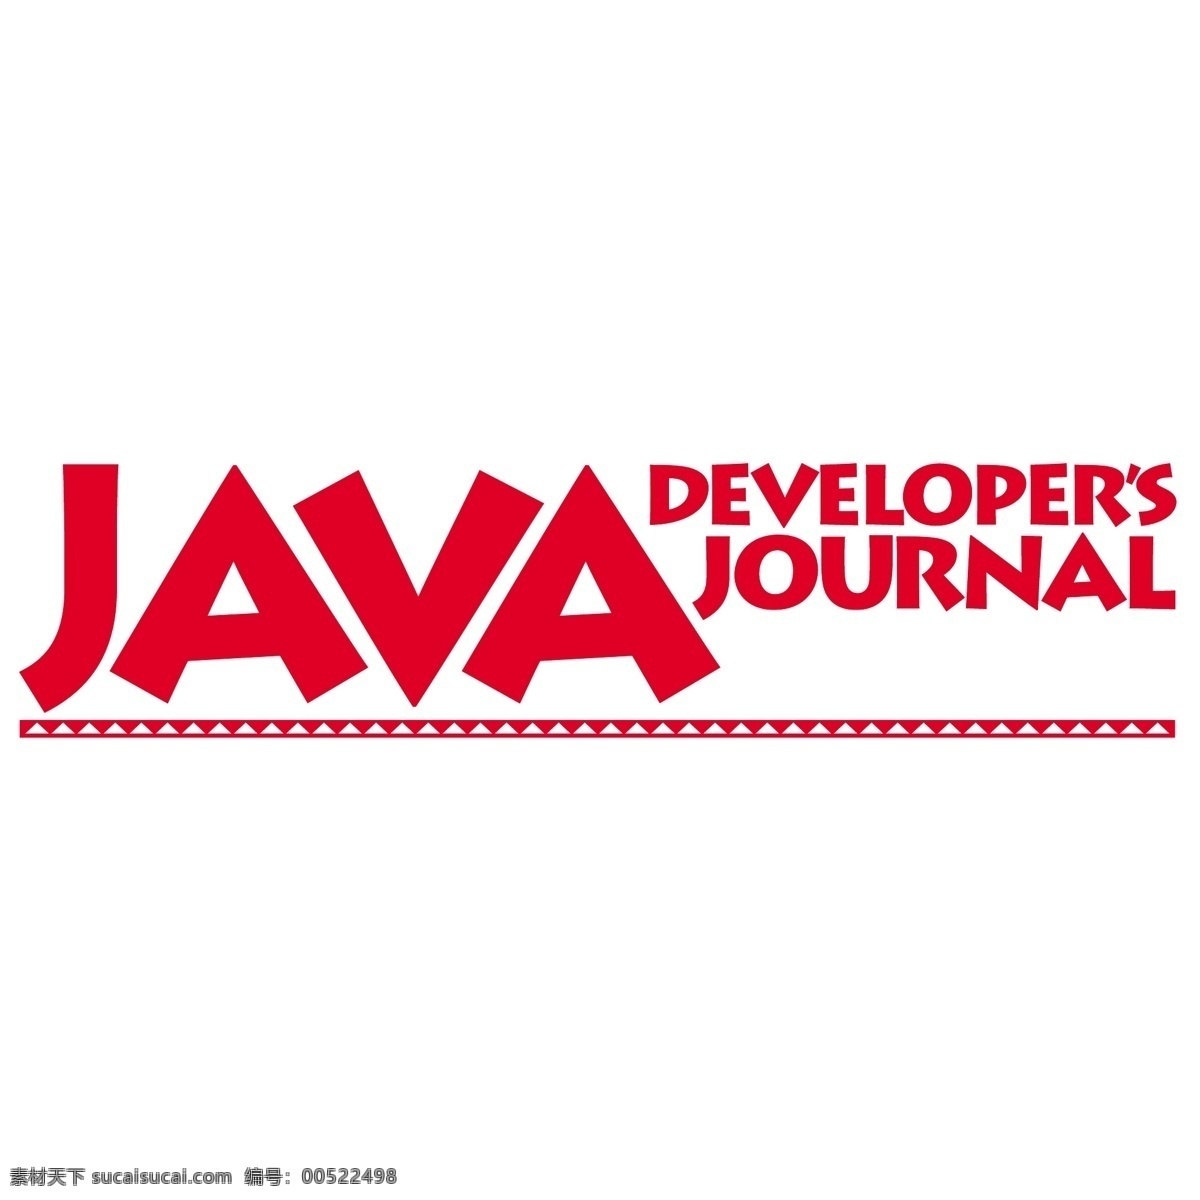 java 开发者 杂志 标识 公司 免费 品牌 品牌标识 商标 矢量标志下载 免费矢量标识 矢量 psd源文件 logo设计